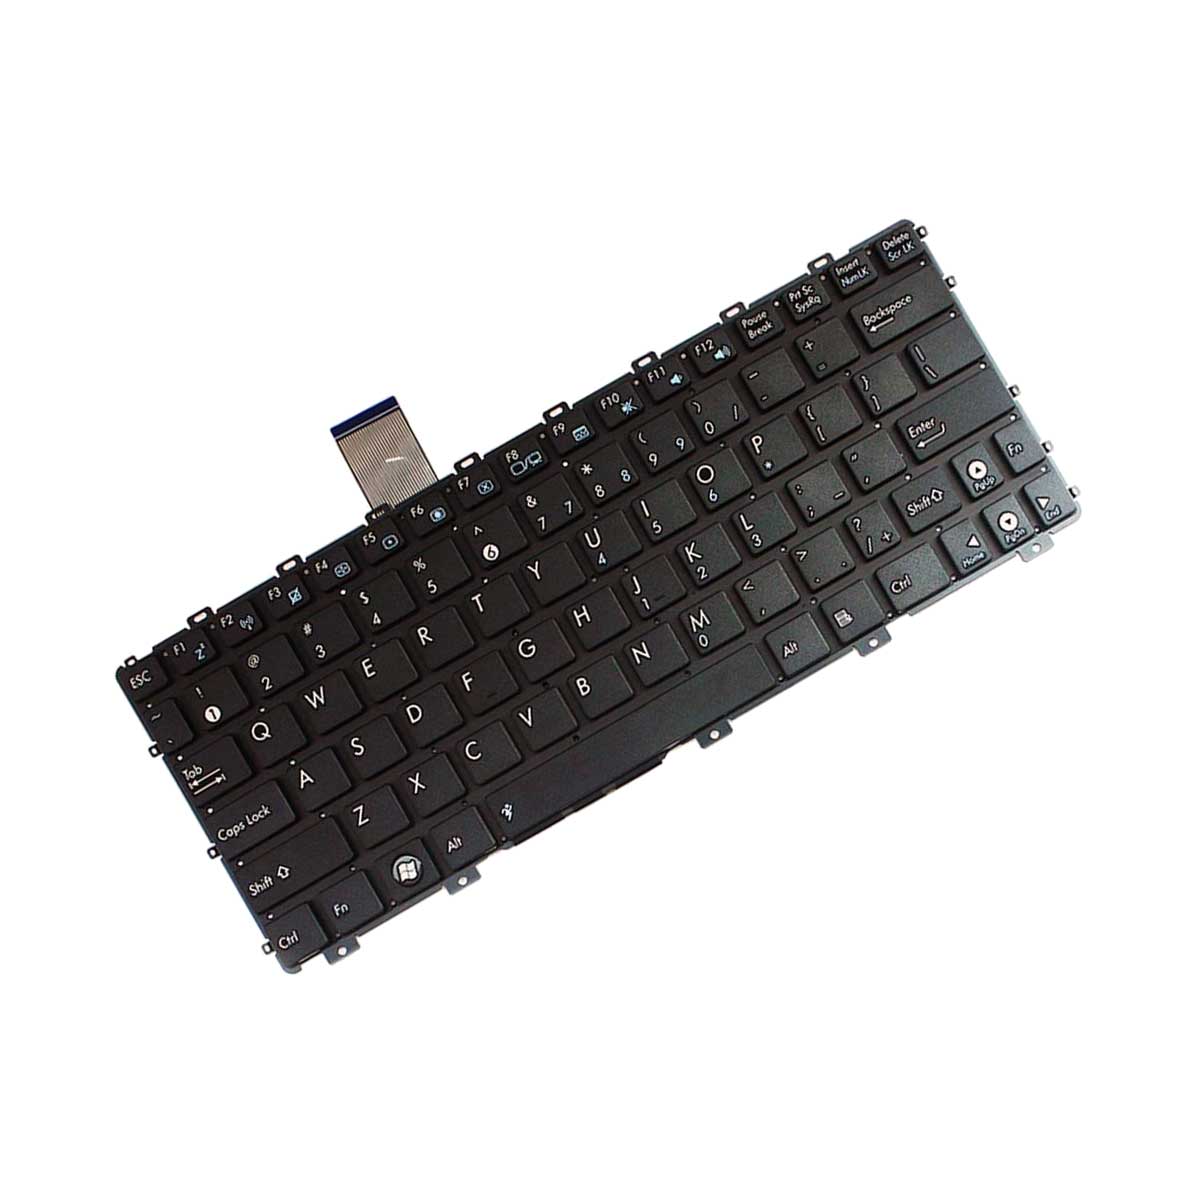 کیبورد لپ تاپ ایسوس Keyboard Laptop ASUS 1015